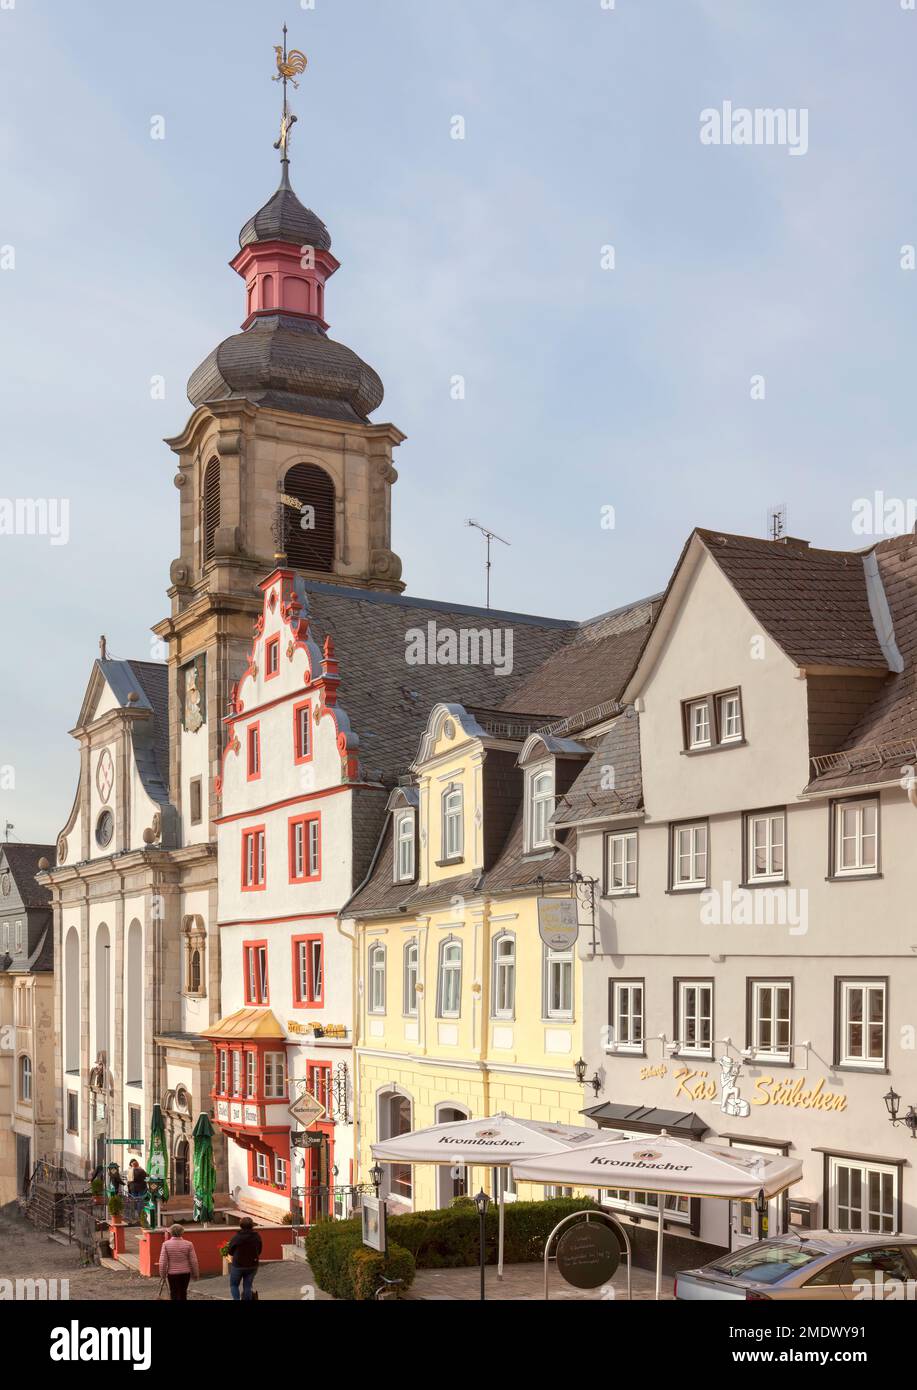 Steinernes Haus, e la Chiesa cattolica dell'Assunzione di Maria, Vecchio mercato, Hachenburg, Westerwaldkreis in Renania-Palatinato, Germania Foto Stock